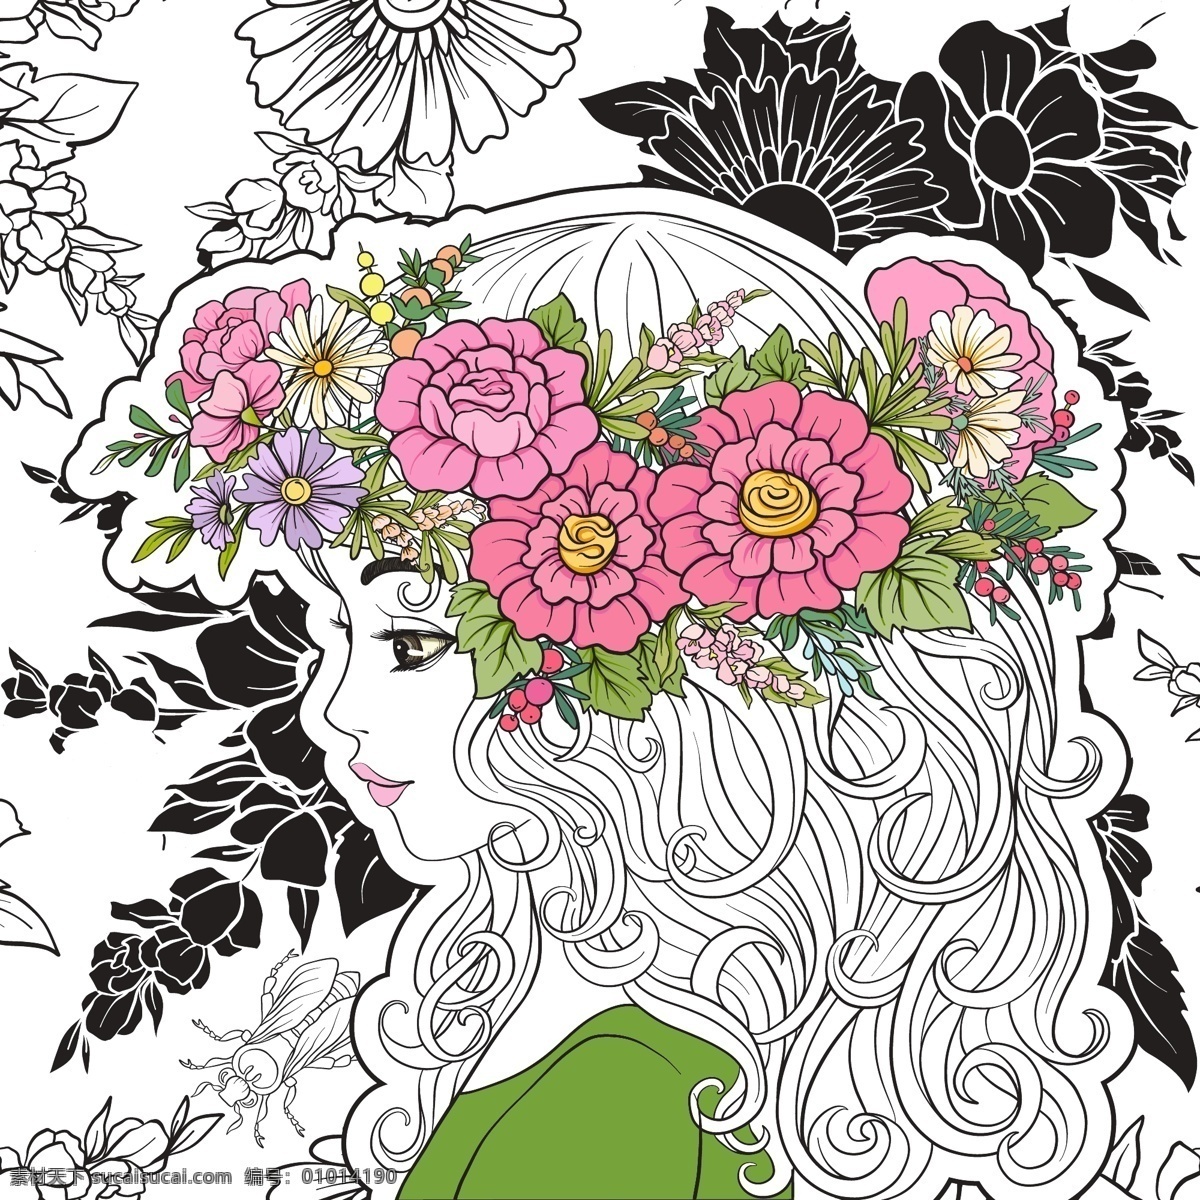 手绘 头 戴 花朵 美女 人物 插画 艺术 线条 头戴 花卉 仙子